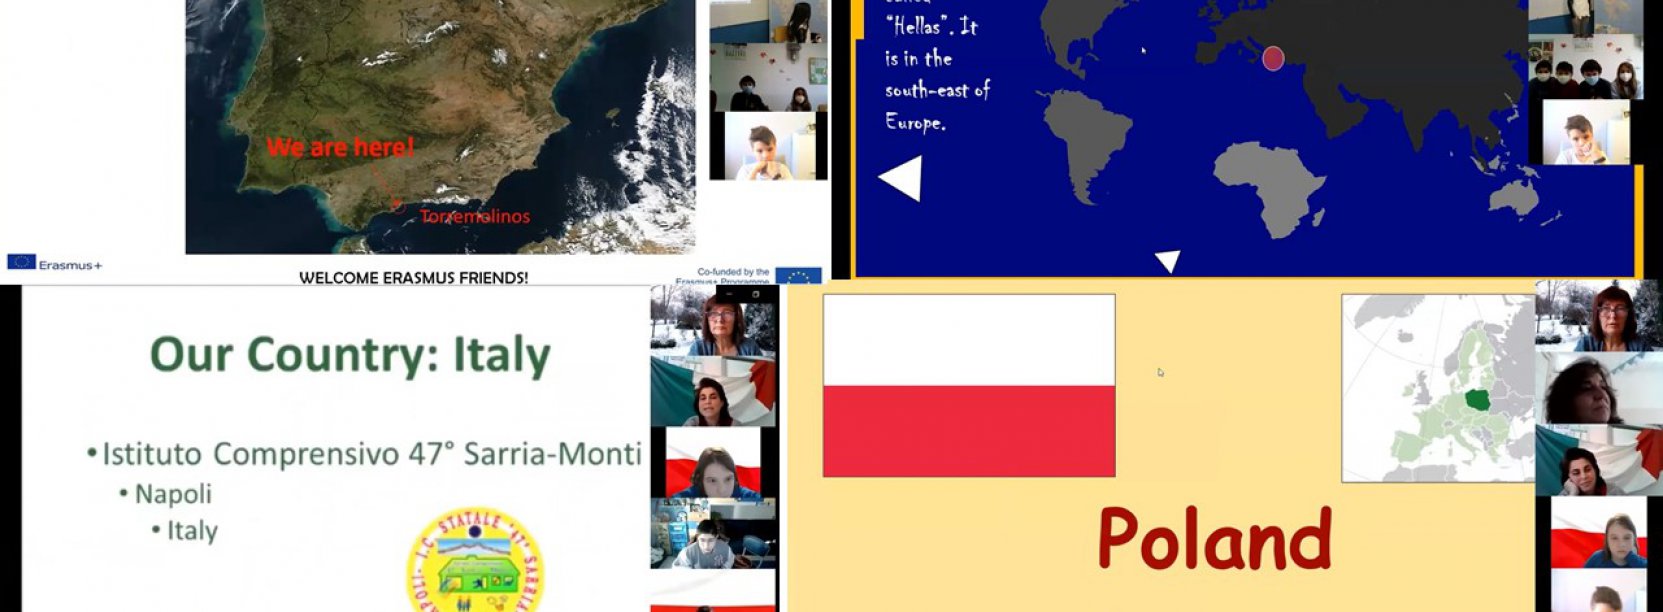 Uczniowie SP 9 spotkali sie online z rówieśnikami z Grecji, Hiszpanii i Włoch w ramach projektu Erasmus+ „Young Scientists Discover the World”